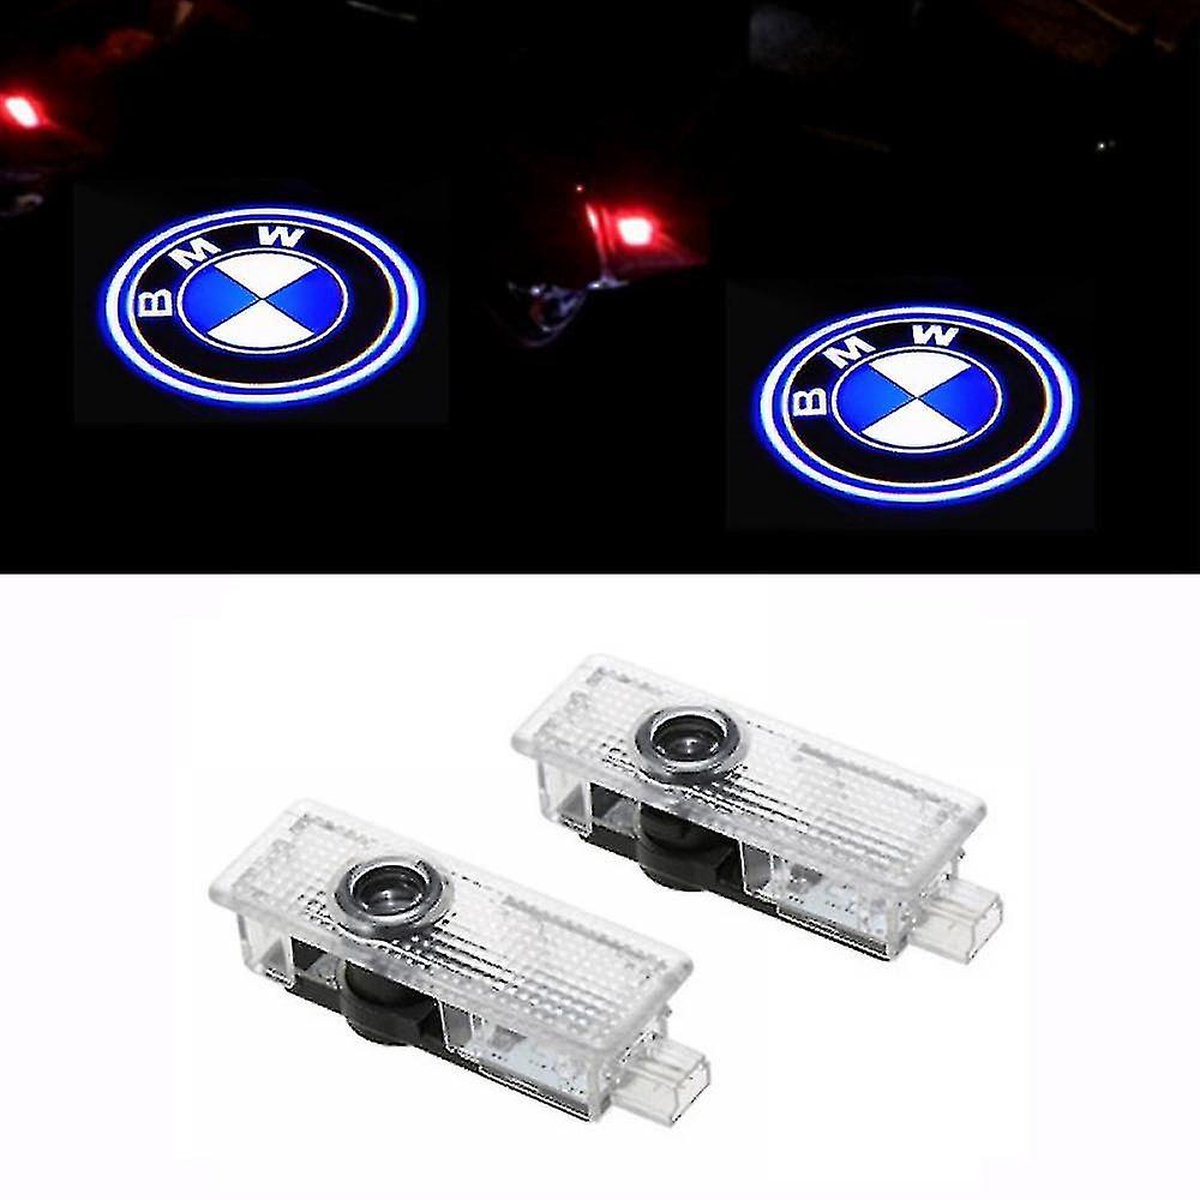 Projecteur de logo BMW - Éclairage de porte de voiture - Intérieur